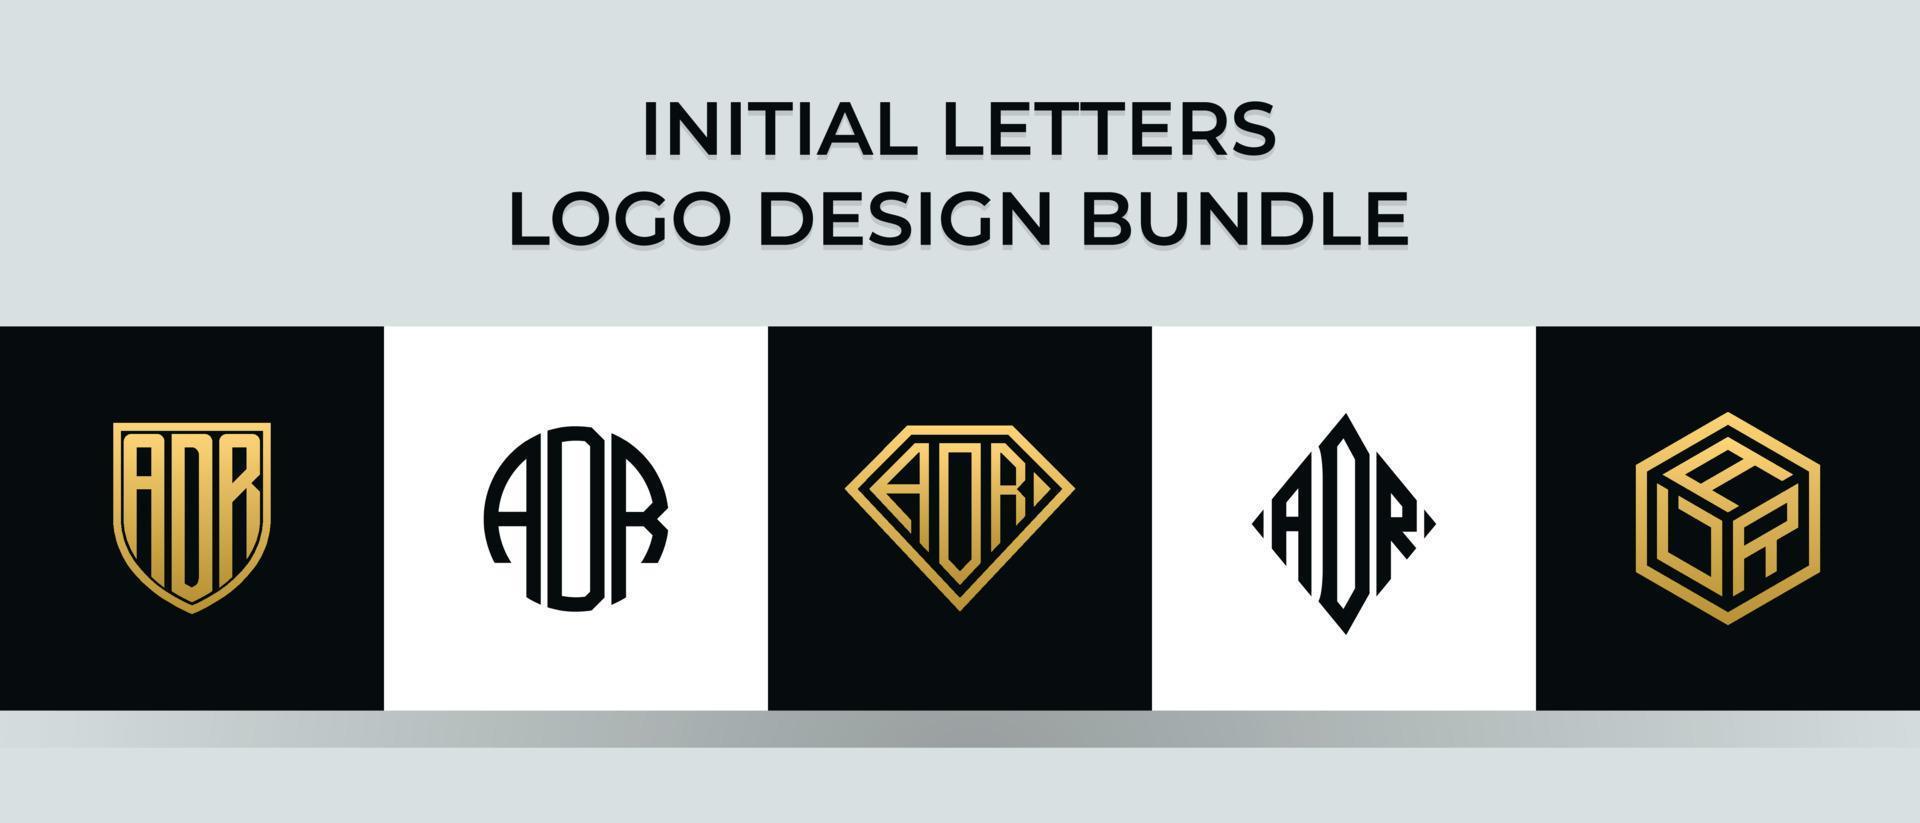 Initial letters ADR logo designs Bundle vector